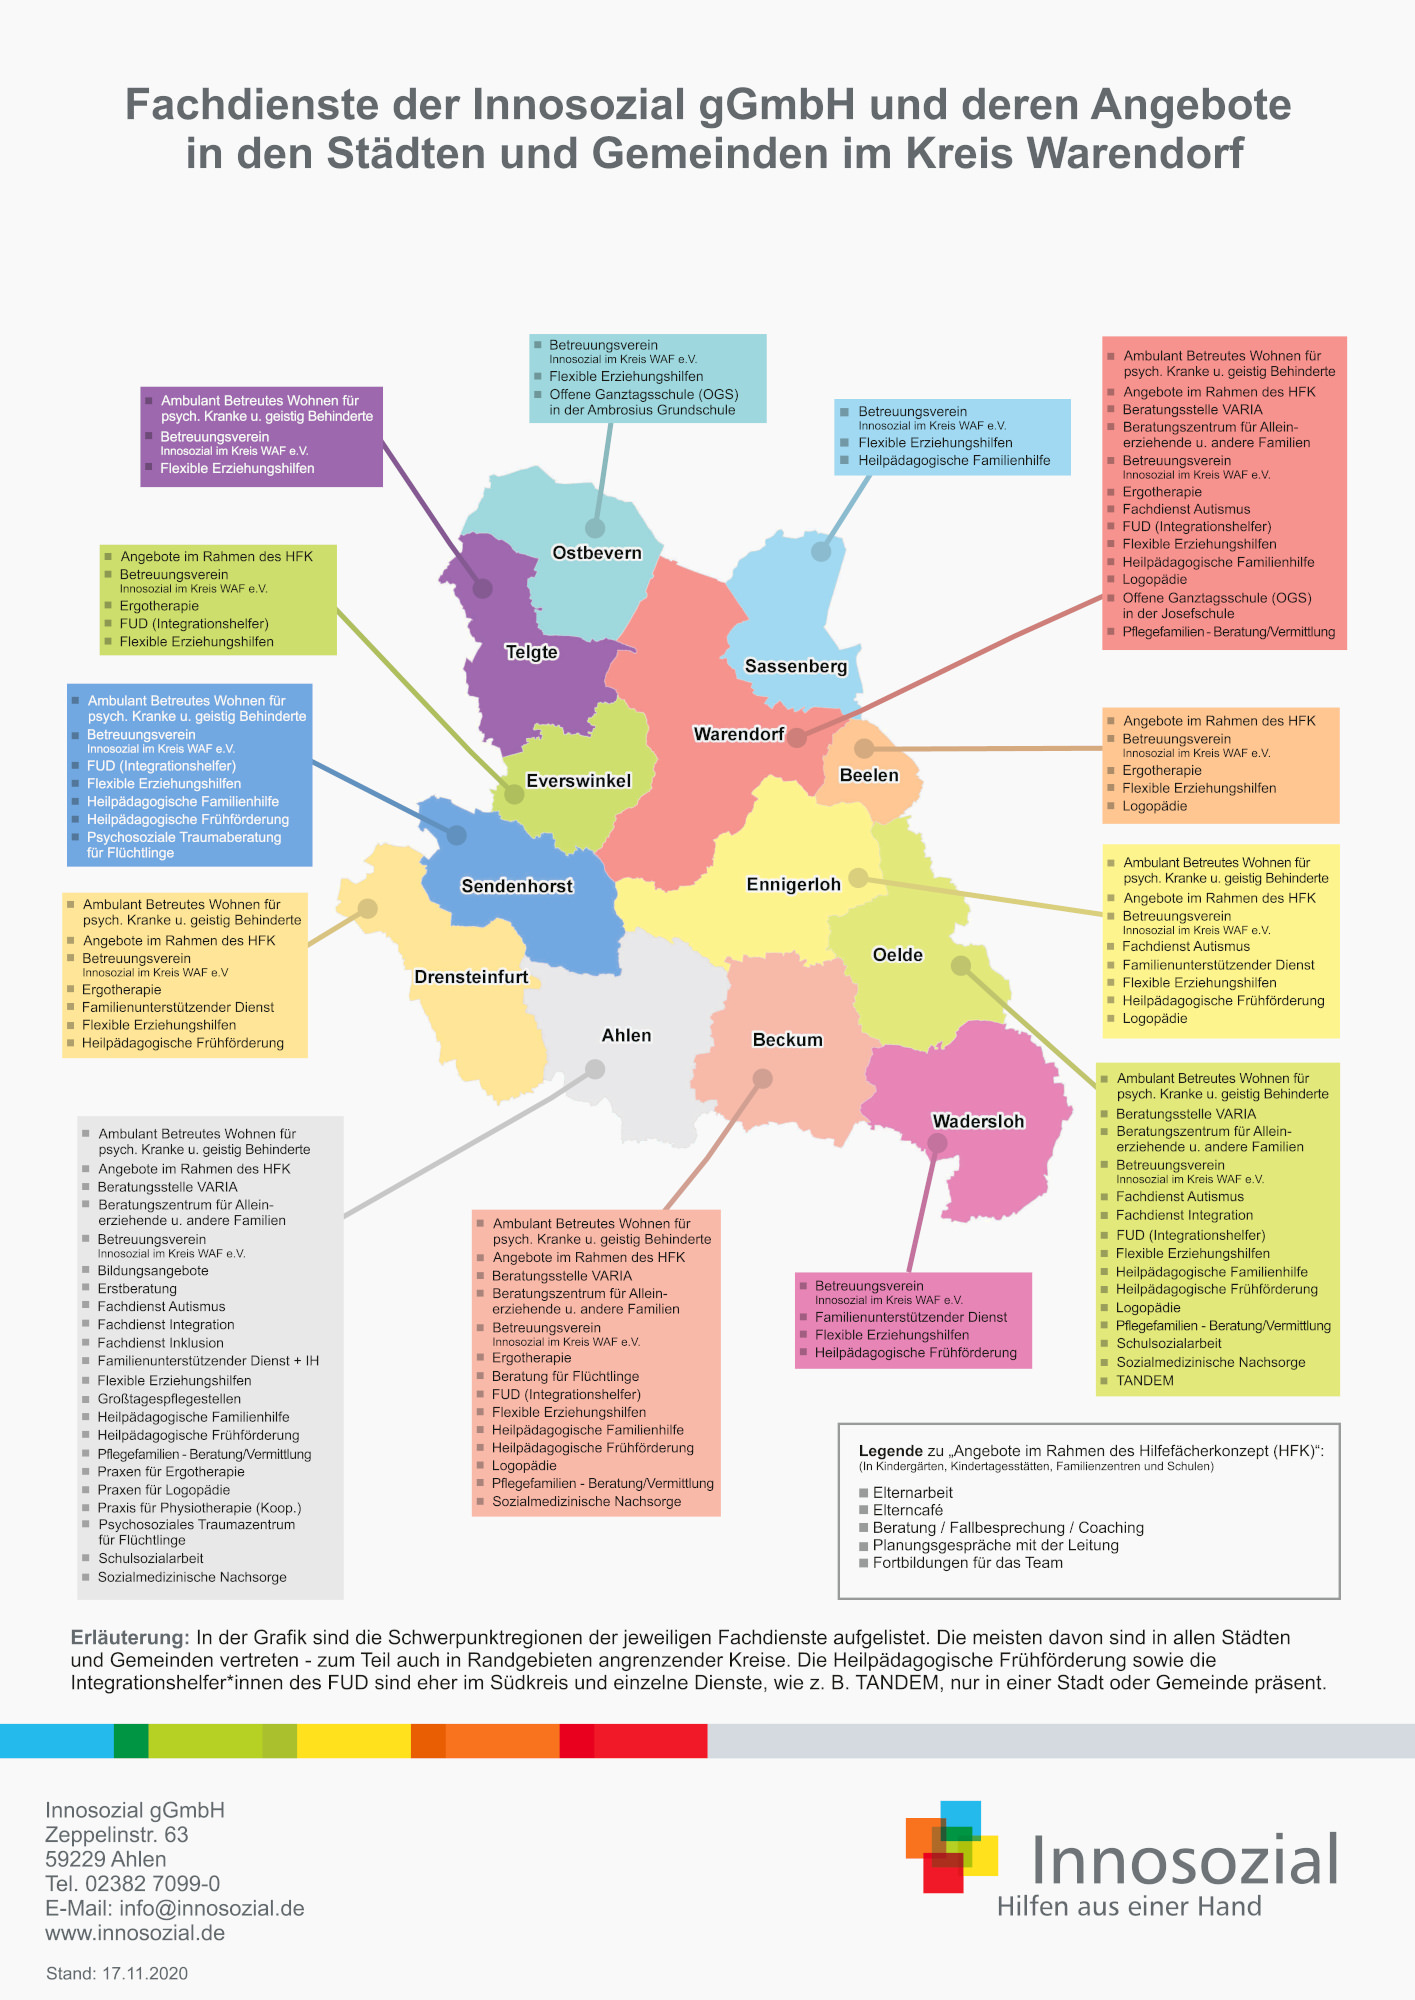 Bild zeigt: Grafische Darstellung aller Fachdienste und Angebote im Kreis Warendorf — Übersichtskarte